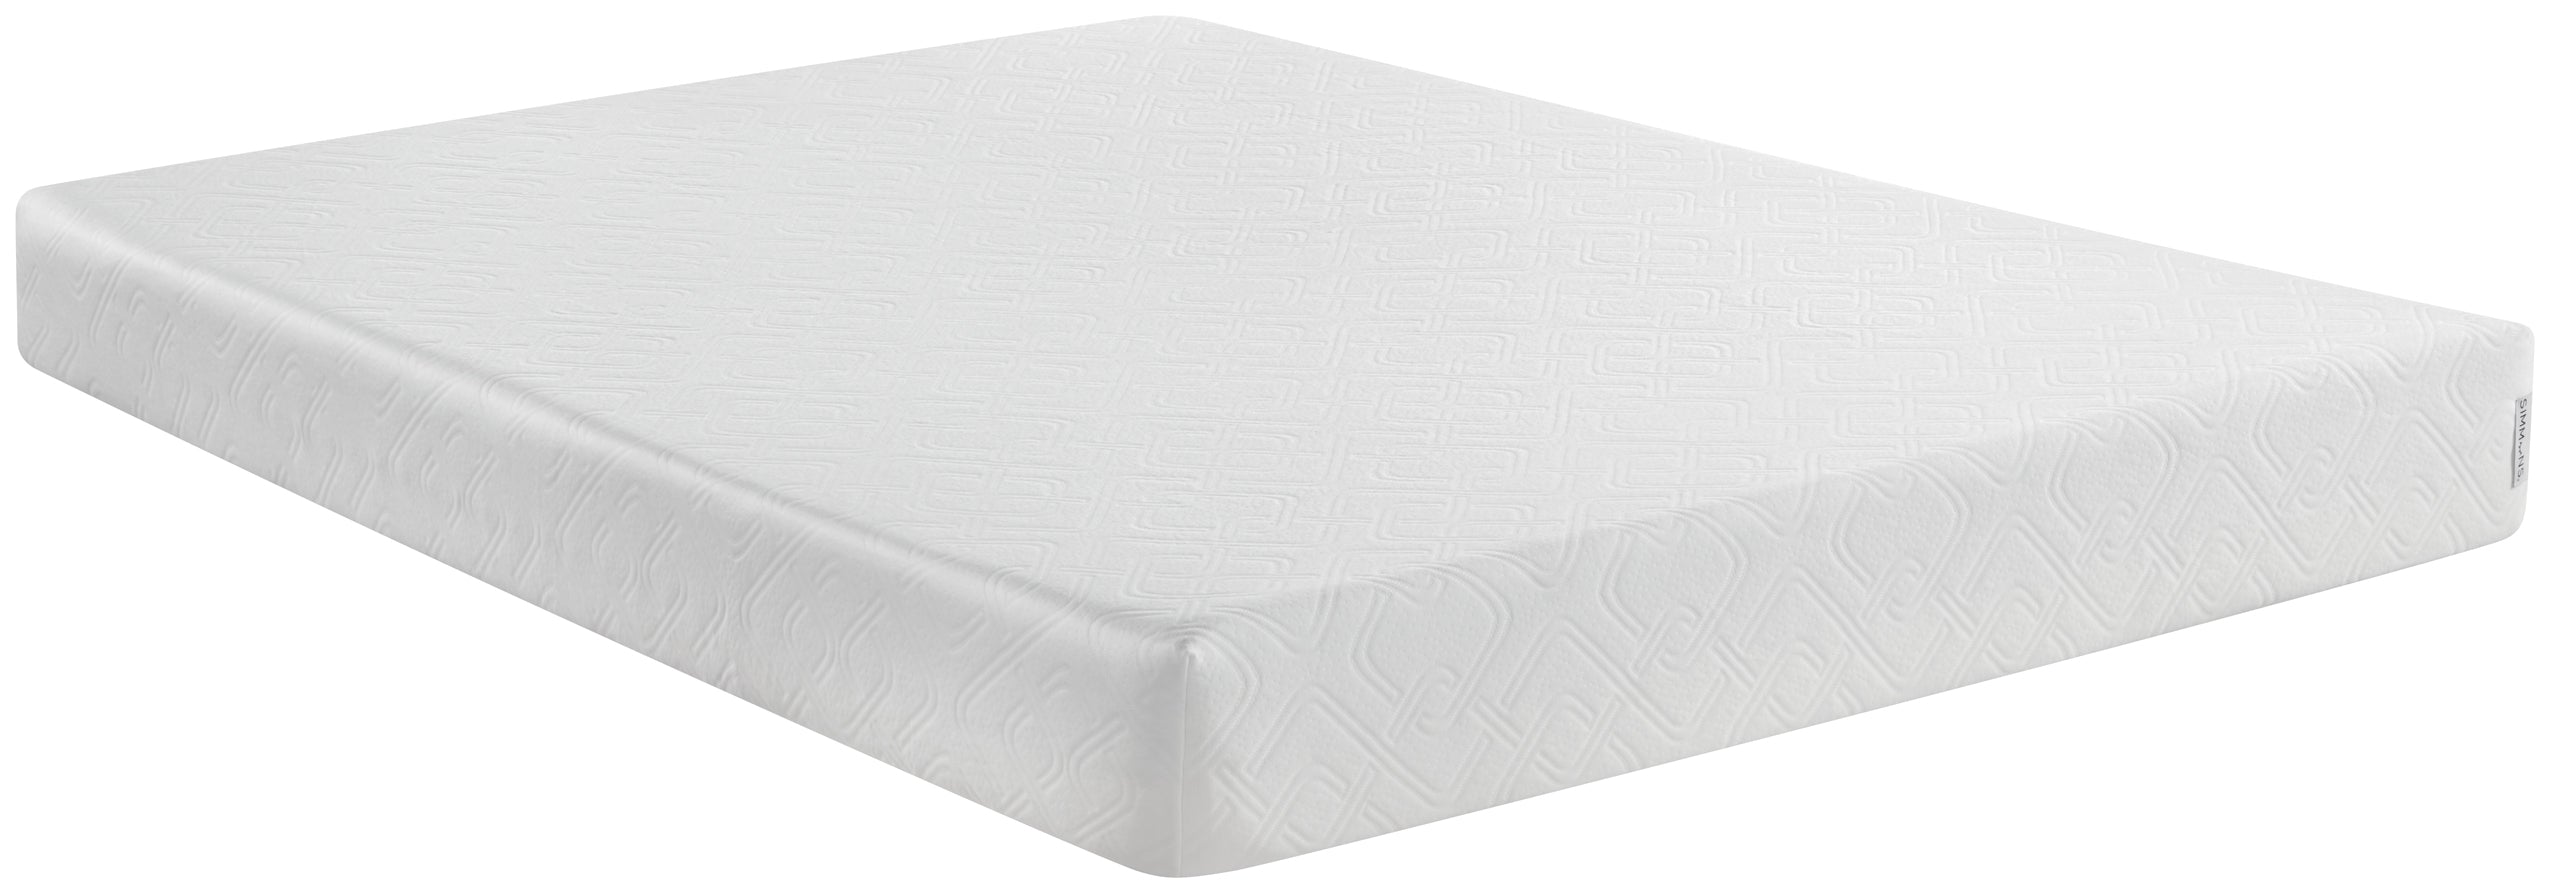 Foam - Firm Playful Mattress full mattress view